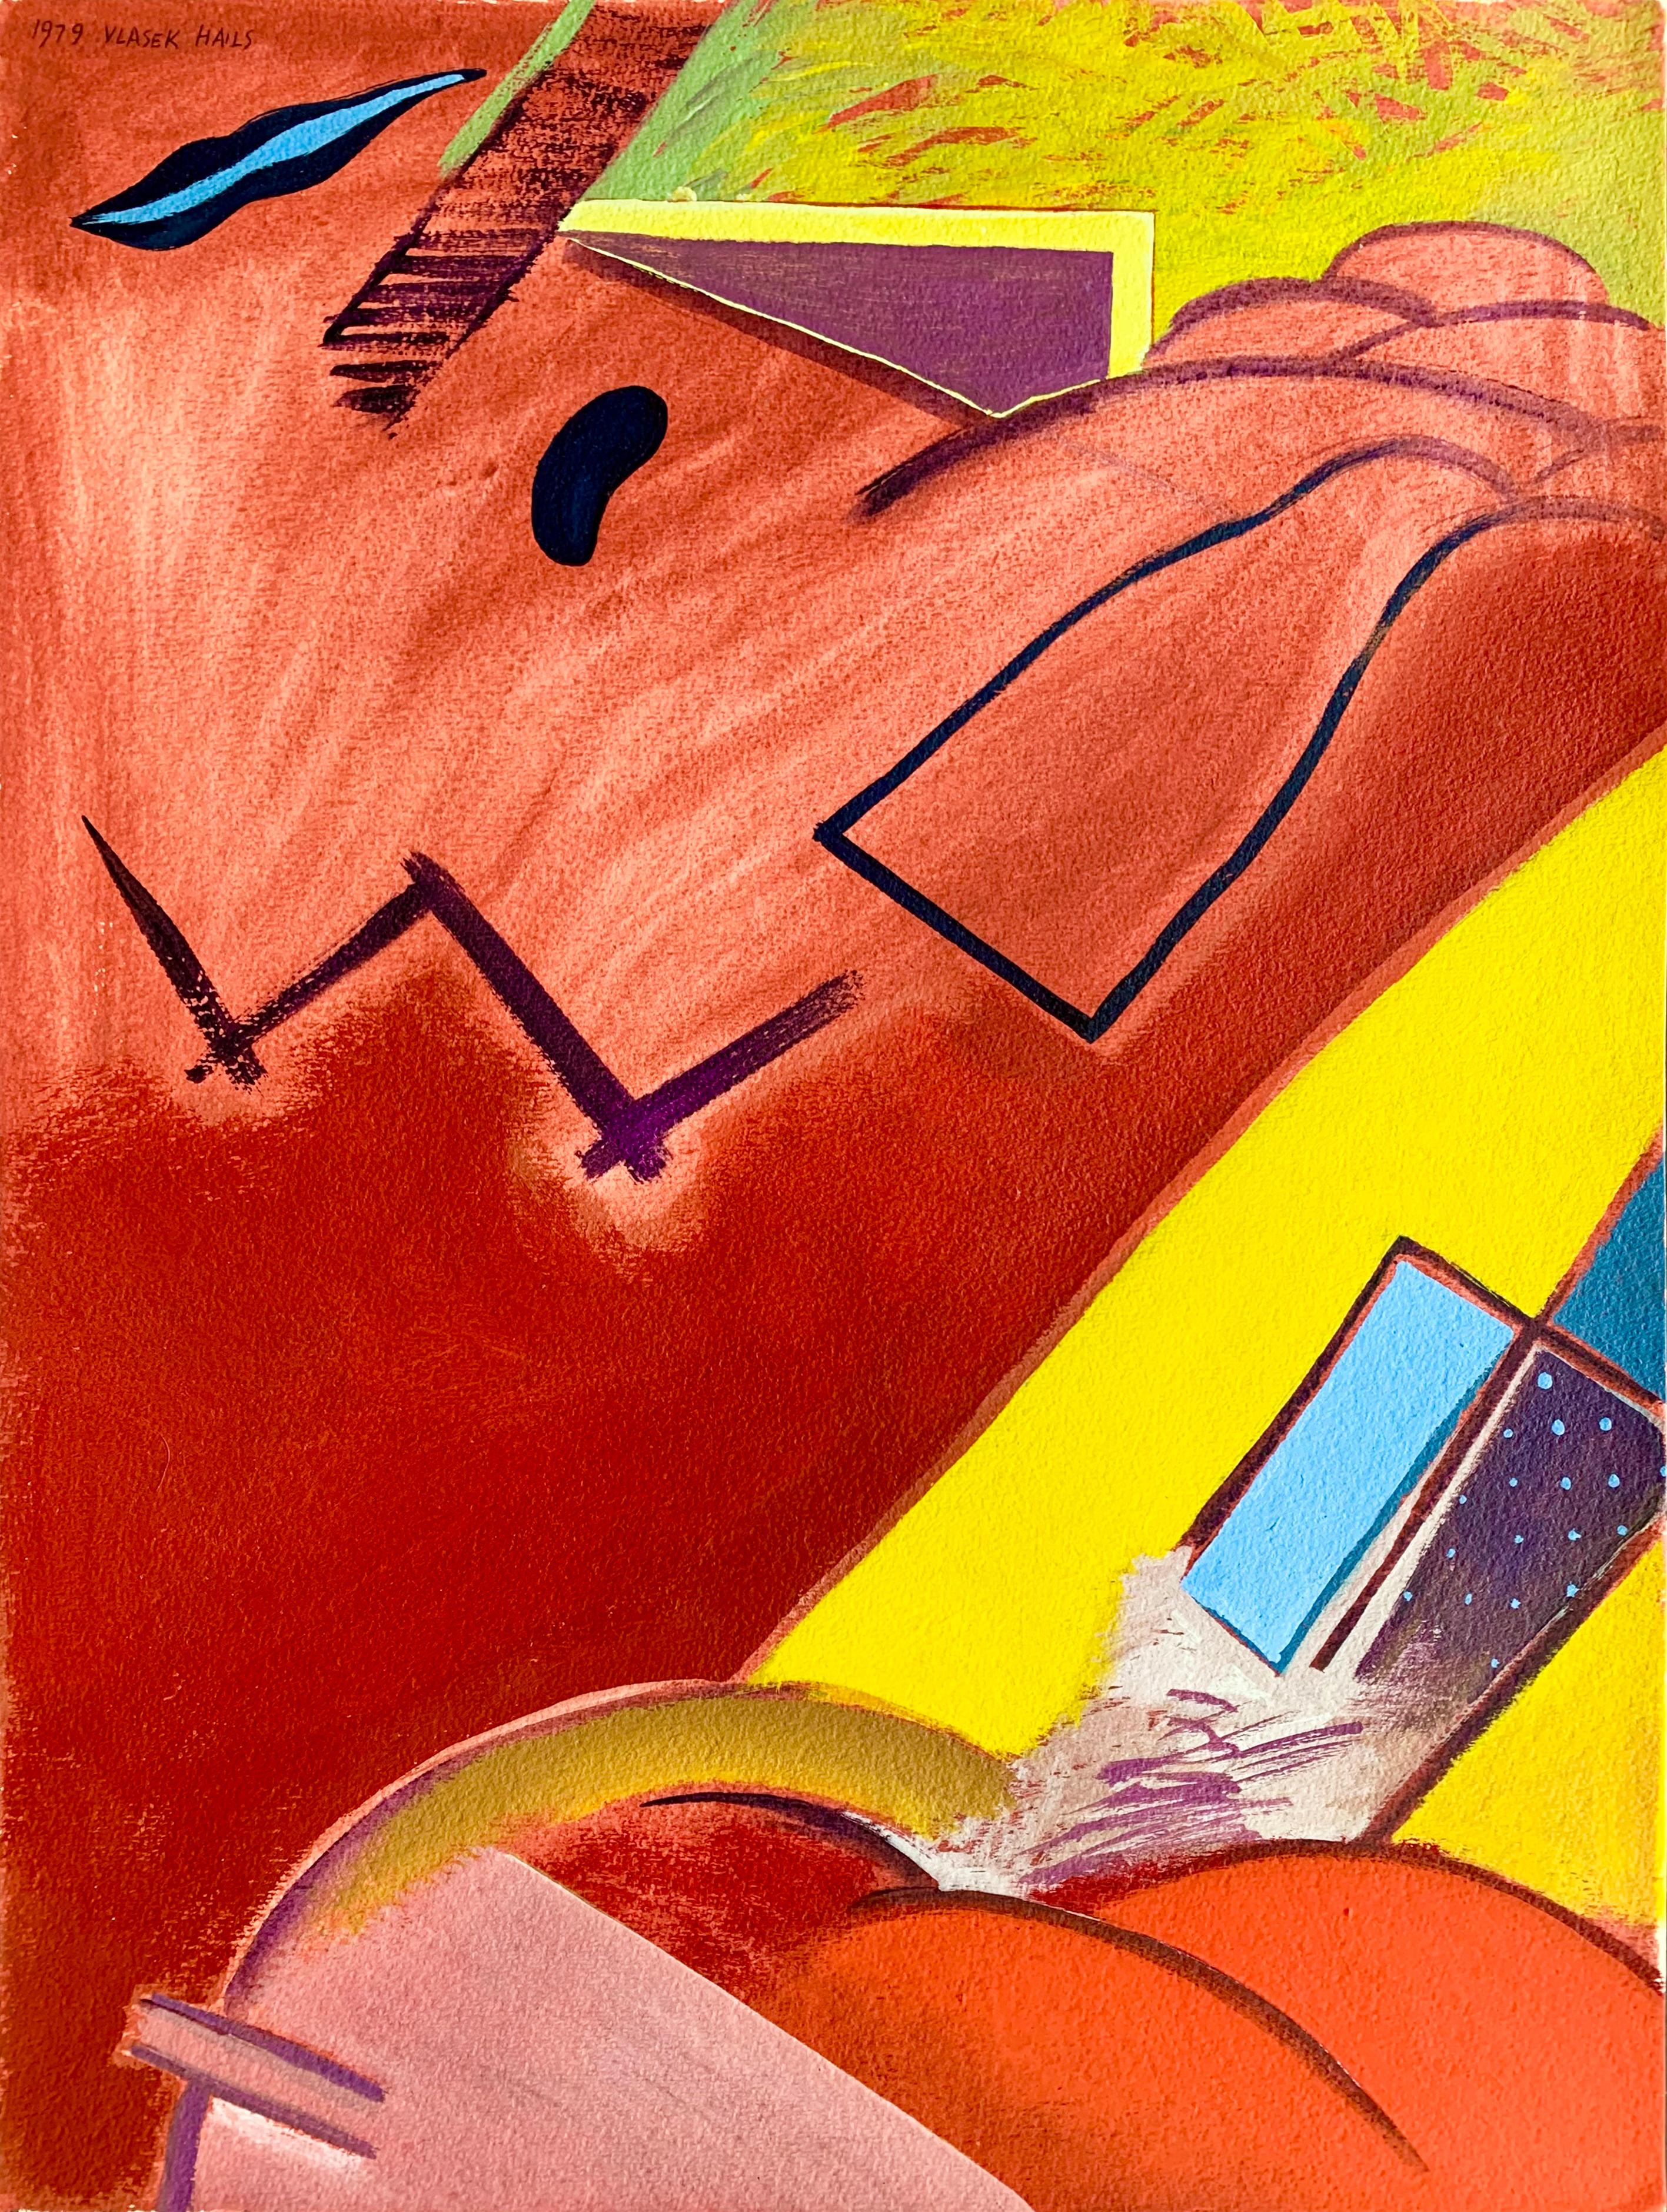 "Untitled" de l'artiste américaine Doris Vlasek Artistics est une peinture acrylique abstraite sur papier épais. Signé "1979 Vlasek Hails" dans le coin supérieur gauche.

Doris Vlasek-Hails est née à Chicago en 1938, un an après l'ouverture du New